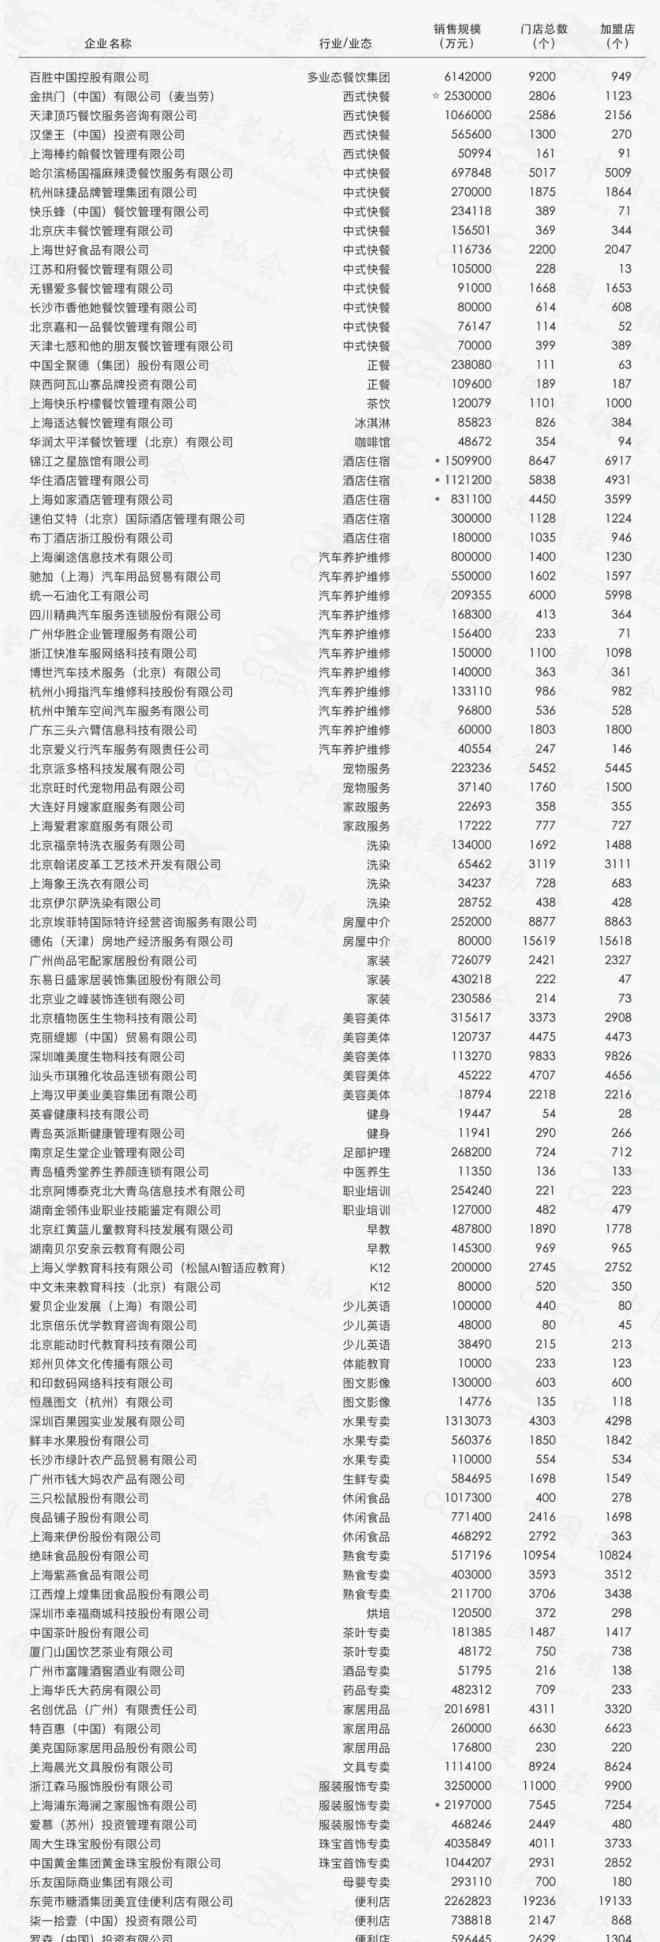 中国百强企业排名2019 2019中国特许连锁百强榜单发布